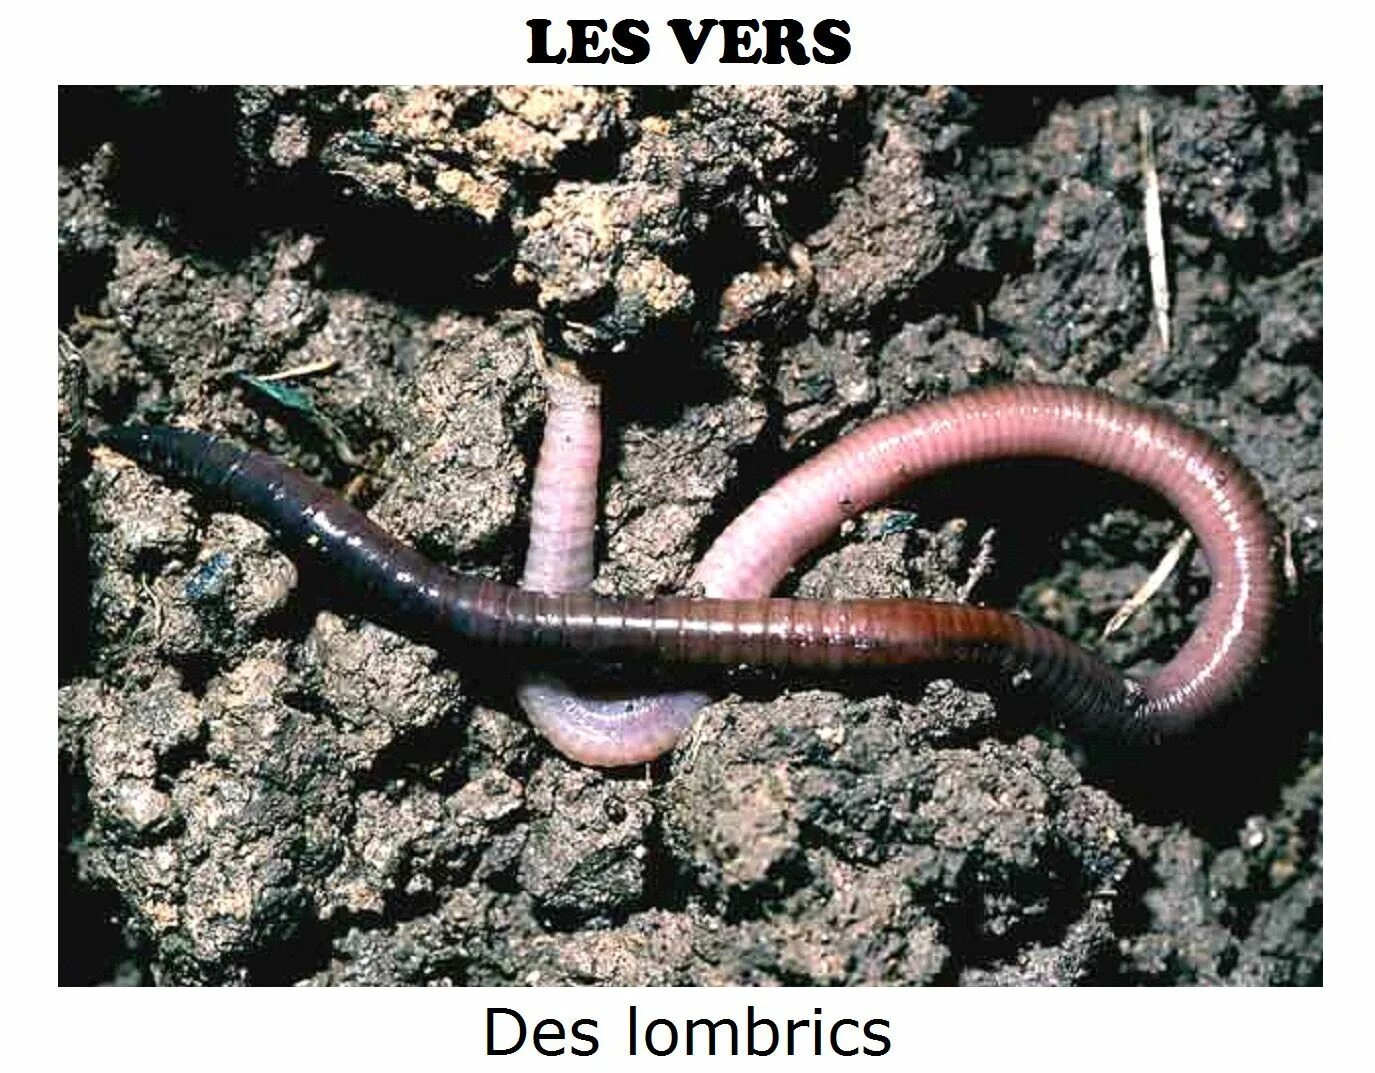 Червь Земляной (Lumbricus terrestris). Малощетинковые дождевой червь. Дождевые черви среда обитания. Дождевые черви класс Малощетинковые.